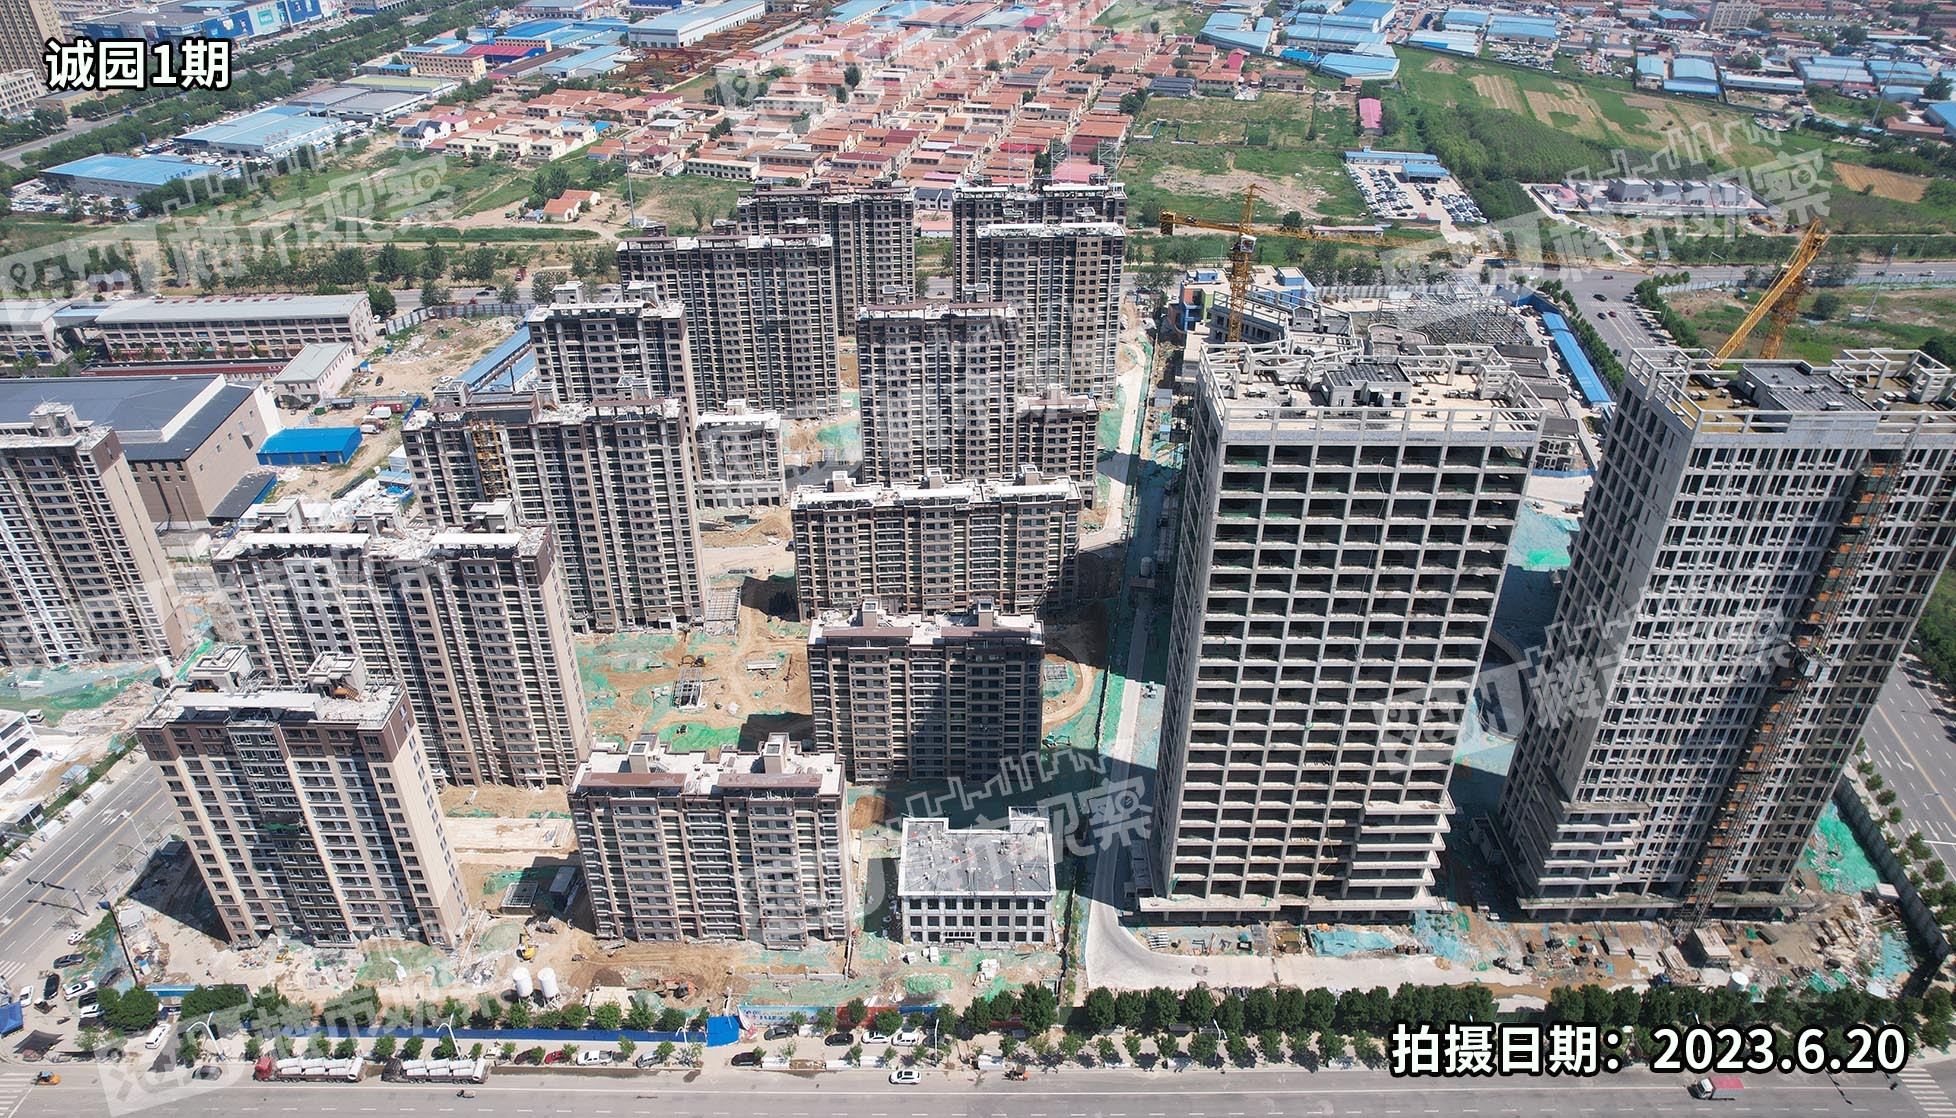 沧州颐高电商智慧产业园最新效果图和规划图曝光！